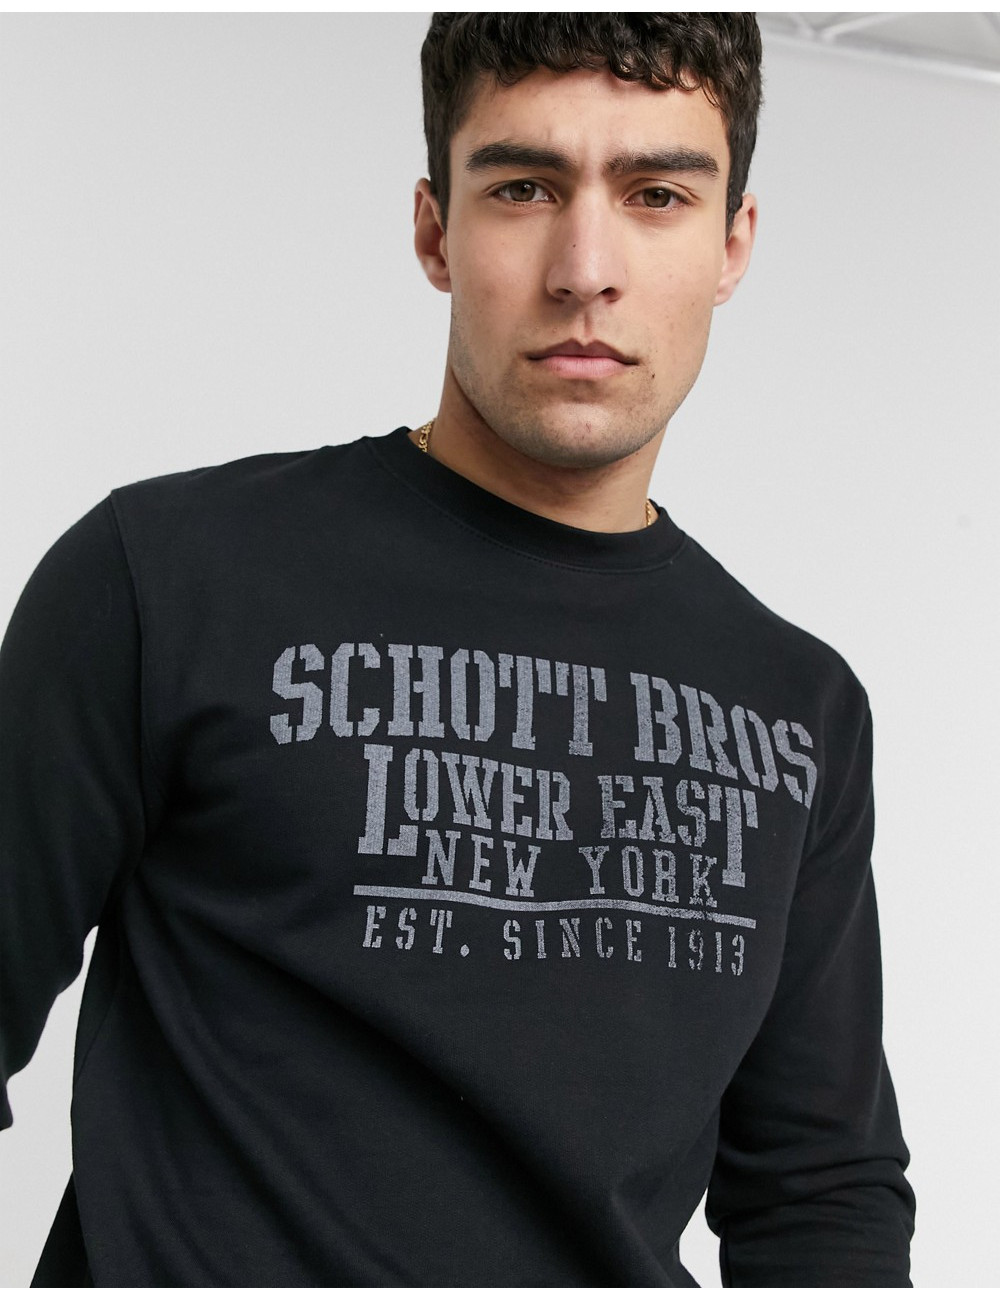 Schott crew neck sweatshirt...